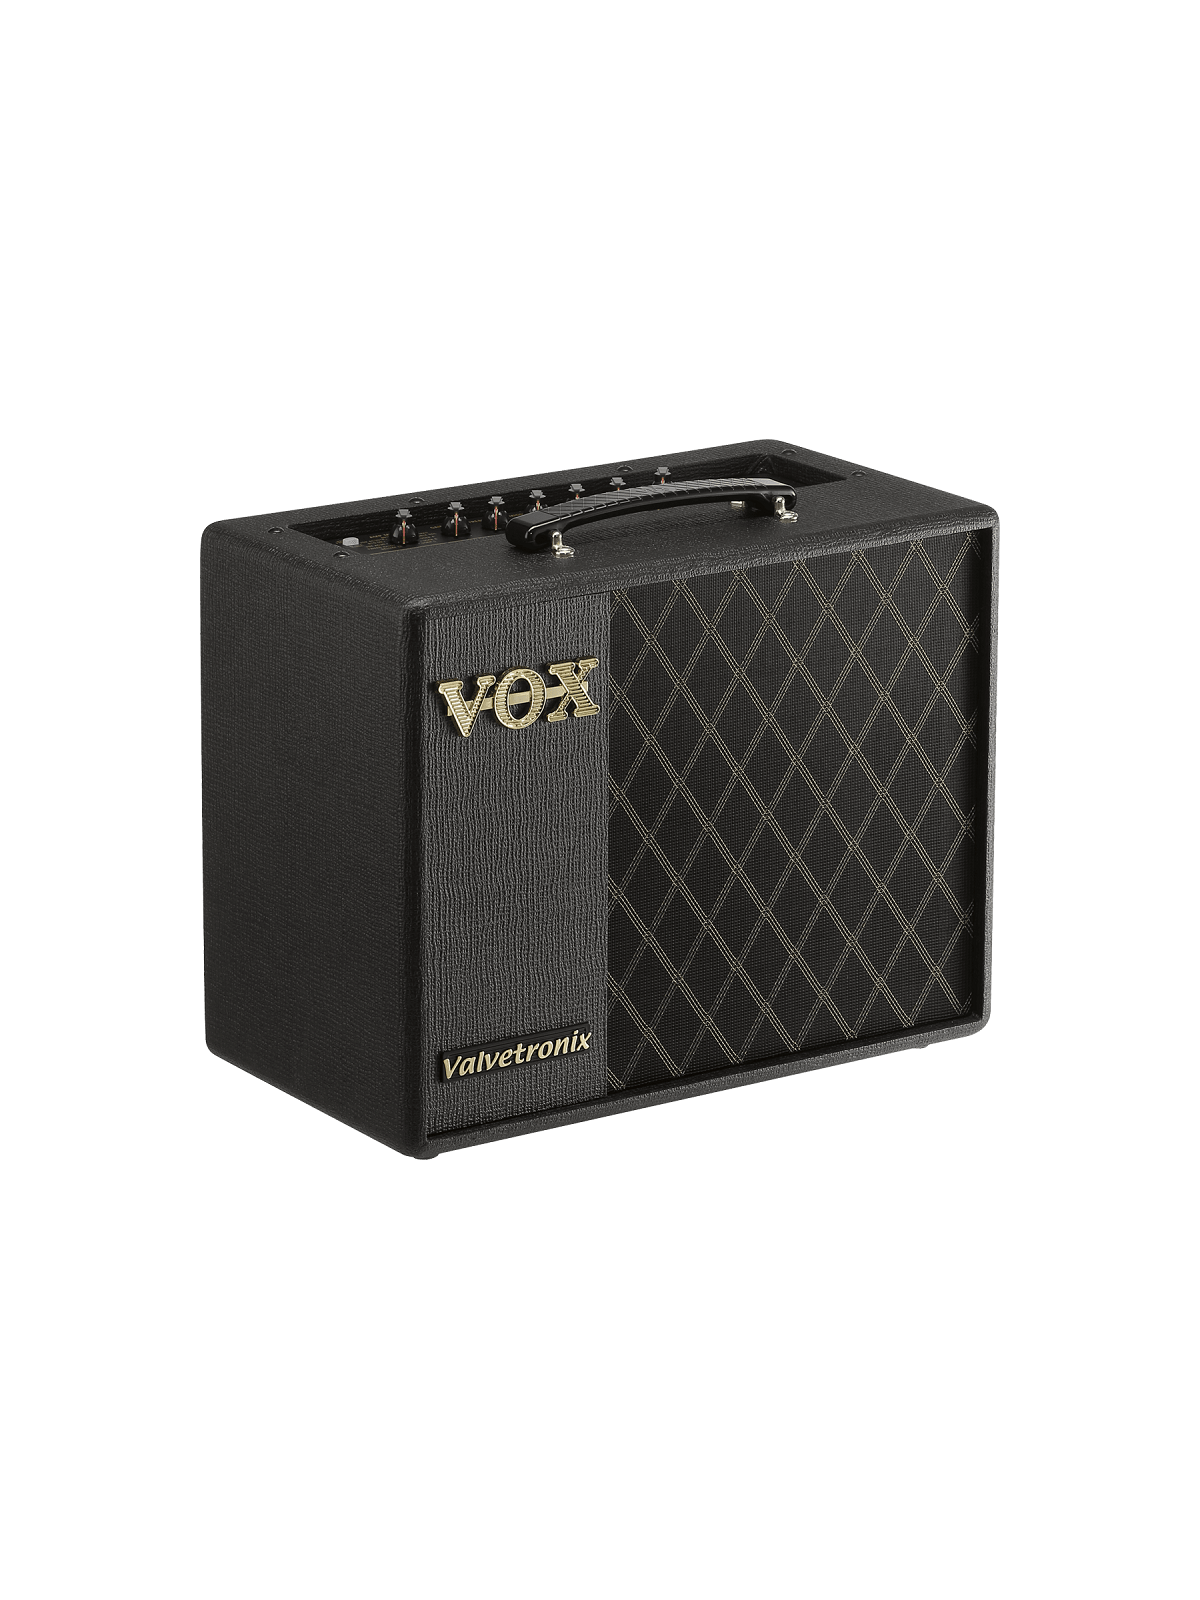 Vox - VT20X